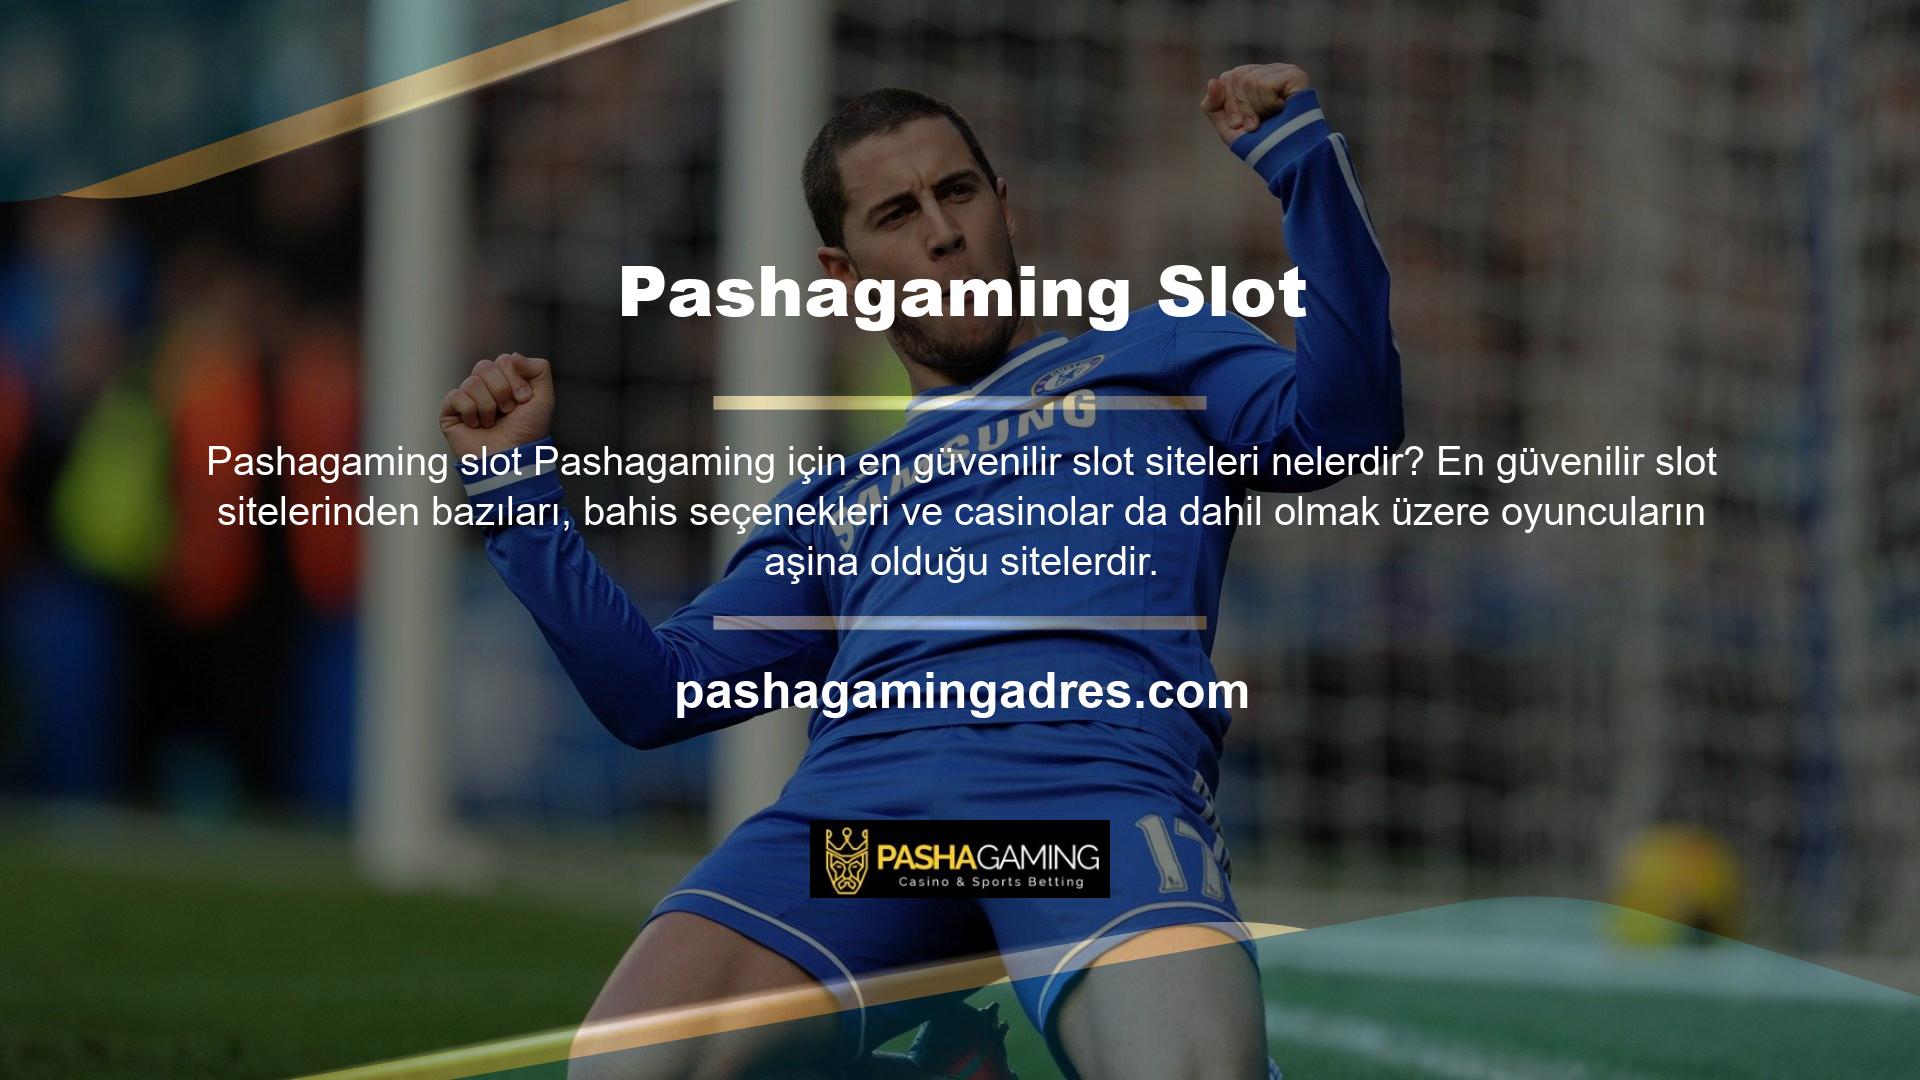 Pashagaming en güvenilir Pashagaming en güvenilir slot makinelerini değerlendirmek için kullanılabilir